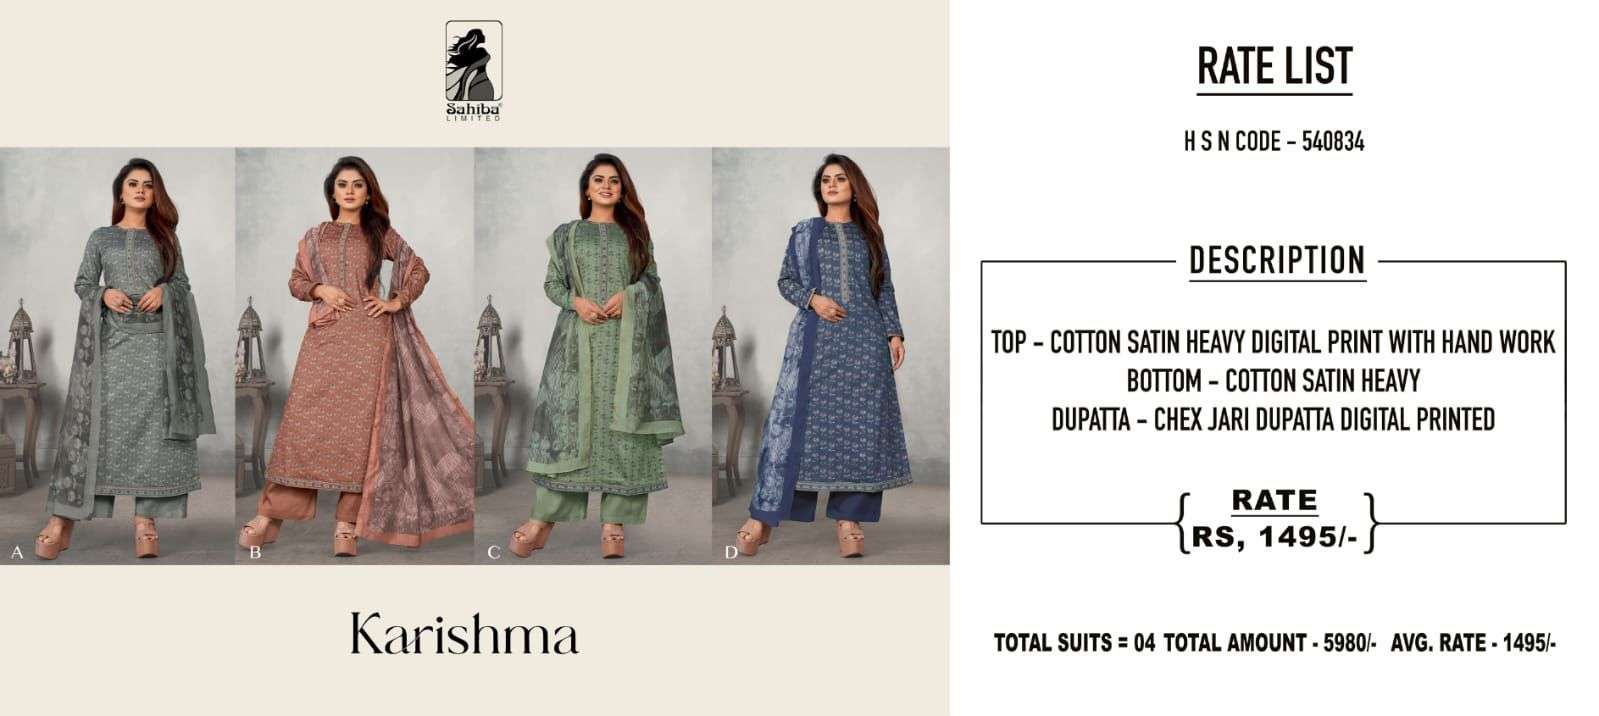 sahiba karishma fancy ladies cotton suit collection wholesaler 4 2022 02 17 18 39 07